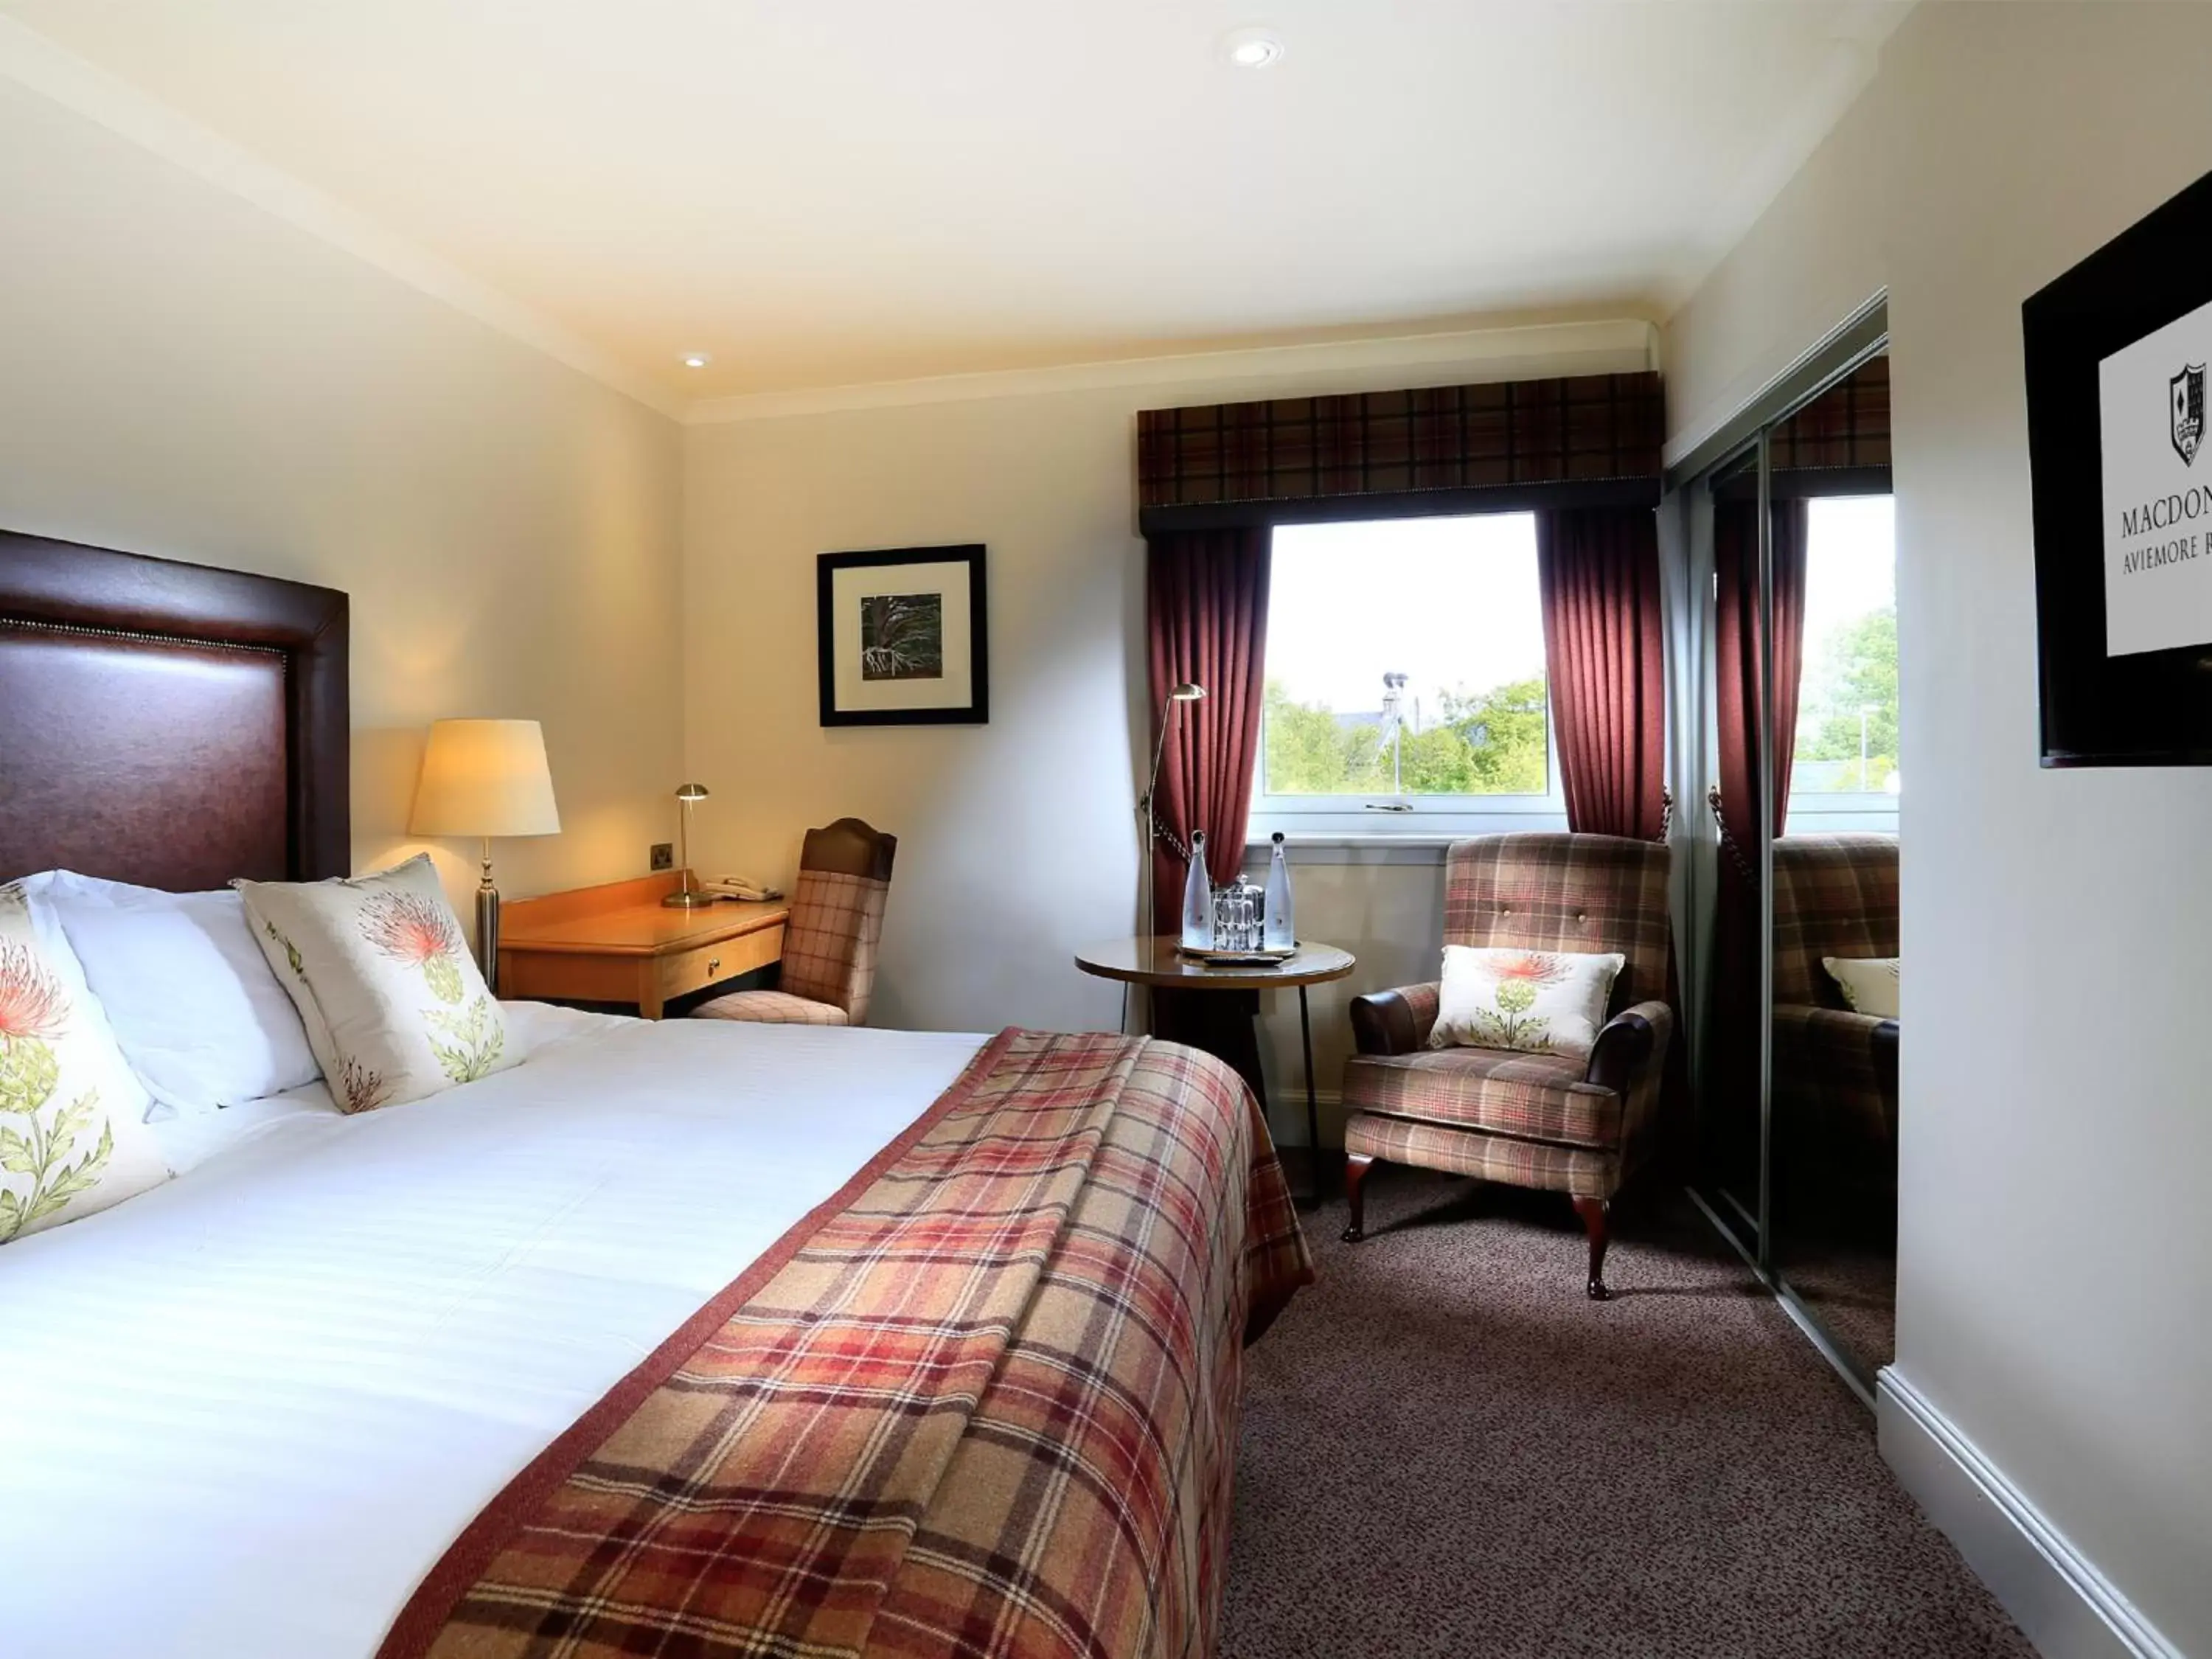 Standard Double Room in Macdonald Aviemore Hotel at Macdonald Aviemore Resort